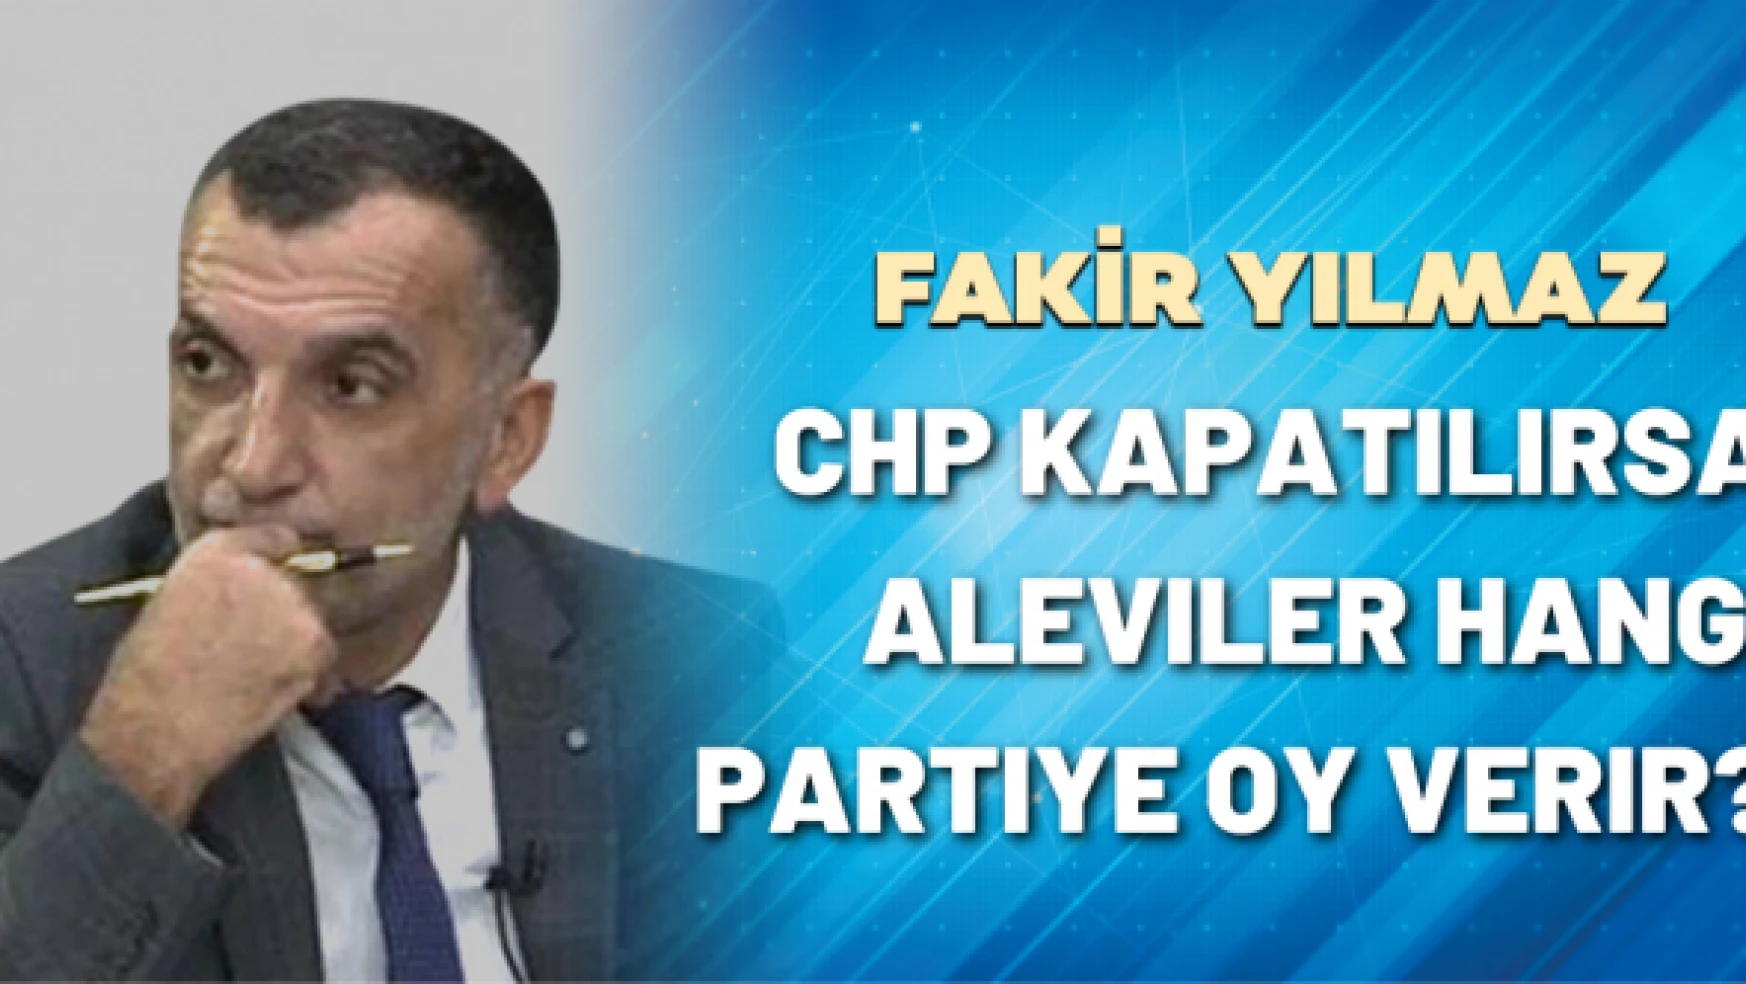 Gazeteci Fakir Yılmaz yazdı: CHP kapatılırsa Aleviler hangi partiye oy verir?